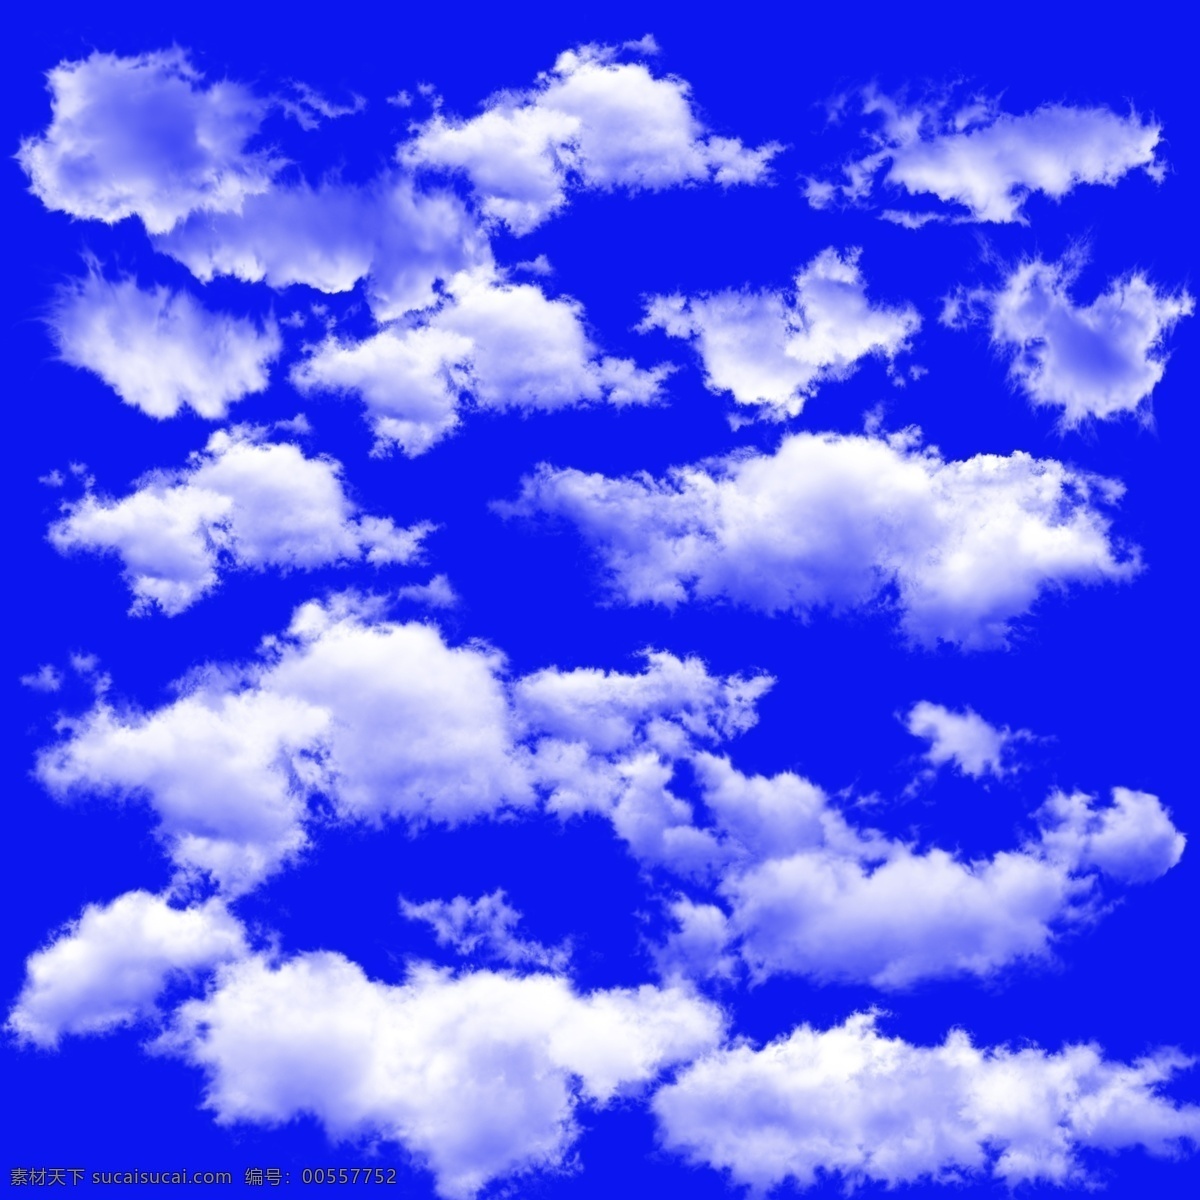 白云 云 蓝天 云朵 云彩 云背景 天空 风景 天空白云 多种云 蓝天白云 白云素材下载 白云模板下载 矢量图素材 分层 源文件